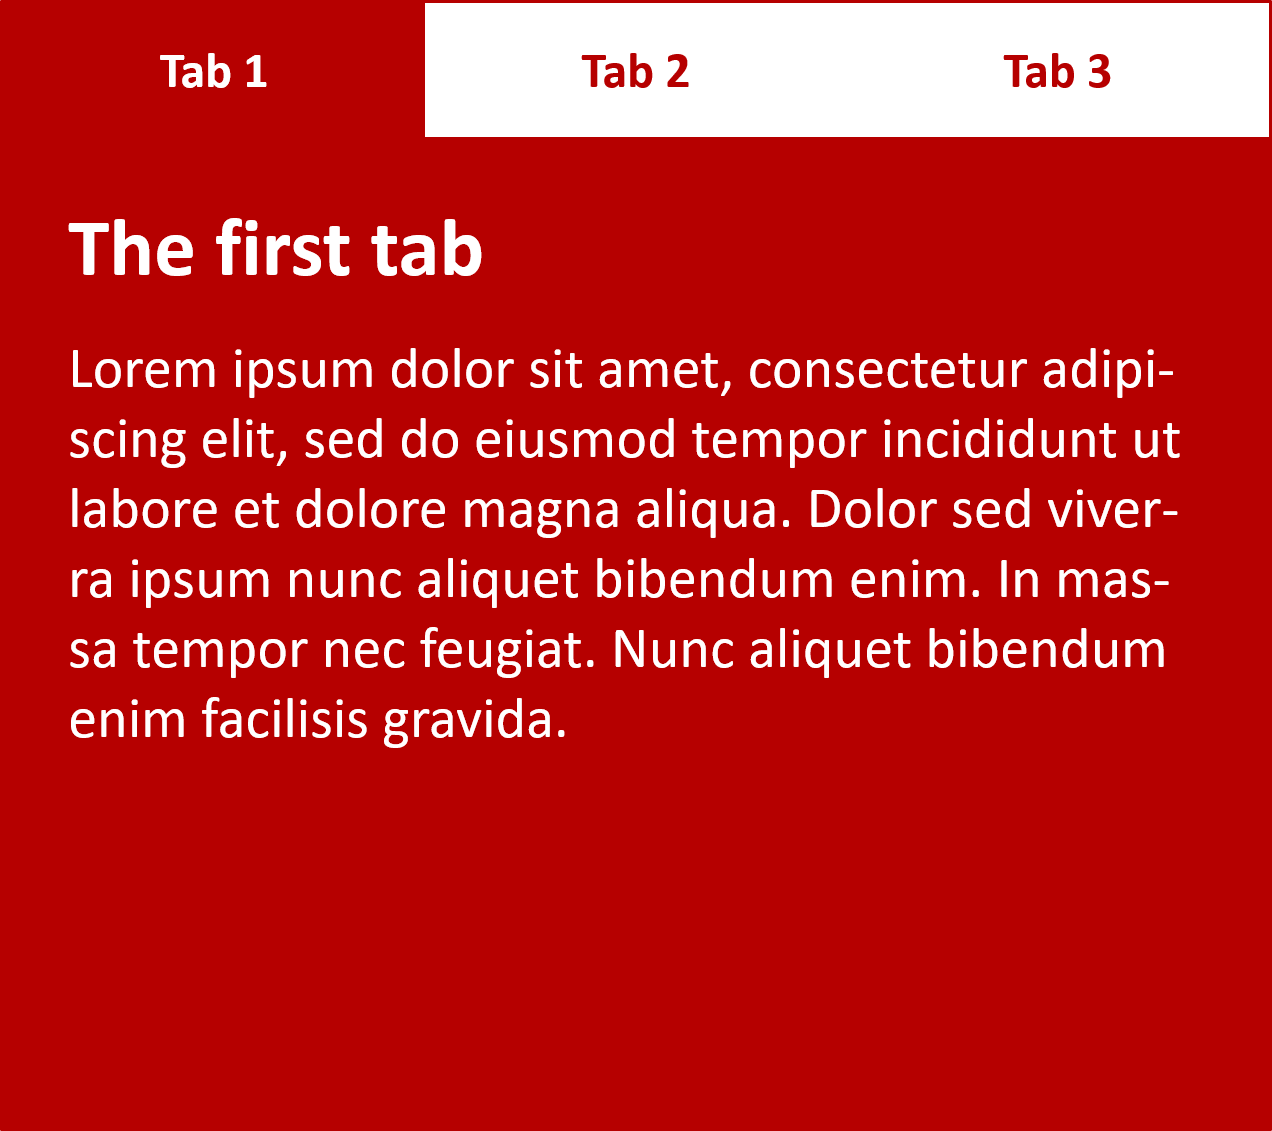 タブのコンテンツをアクセシビリティで非表示・表示させる例を示すスクリーンショット。例えば、タブ 1、タブ 2、タブ 3の 3 つのタブがあります。タブ 1 は現在フォーカスされており、コンテンツを表示するためにアクティブになっています。